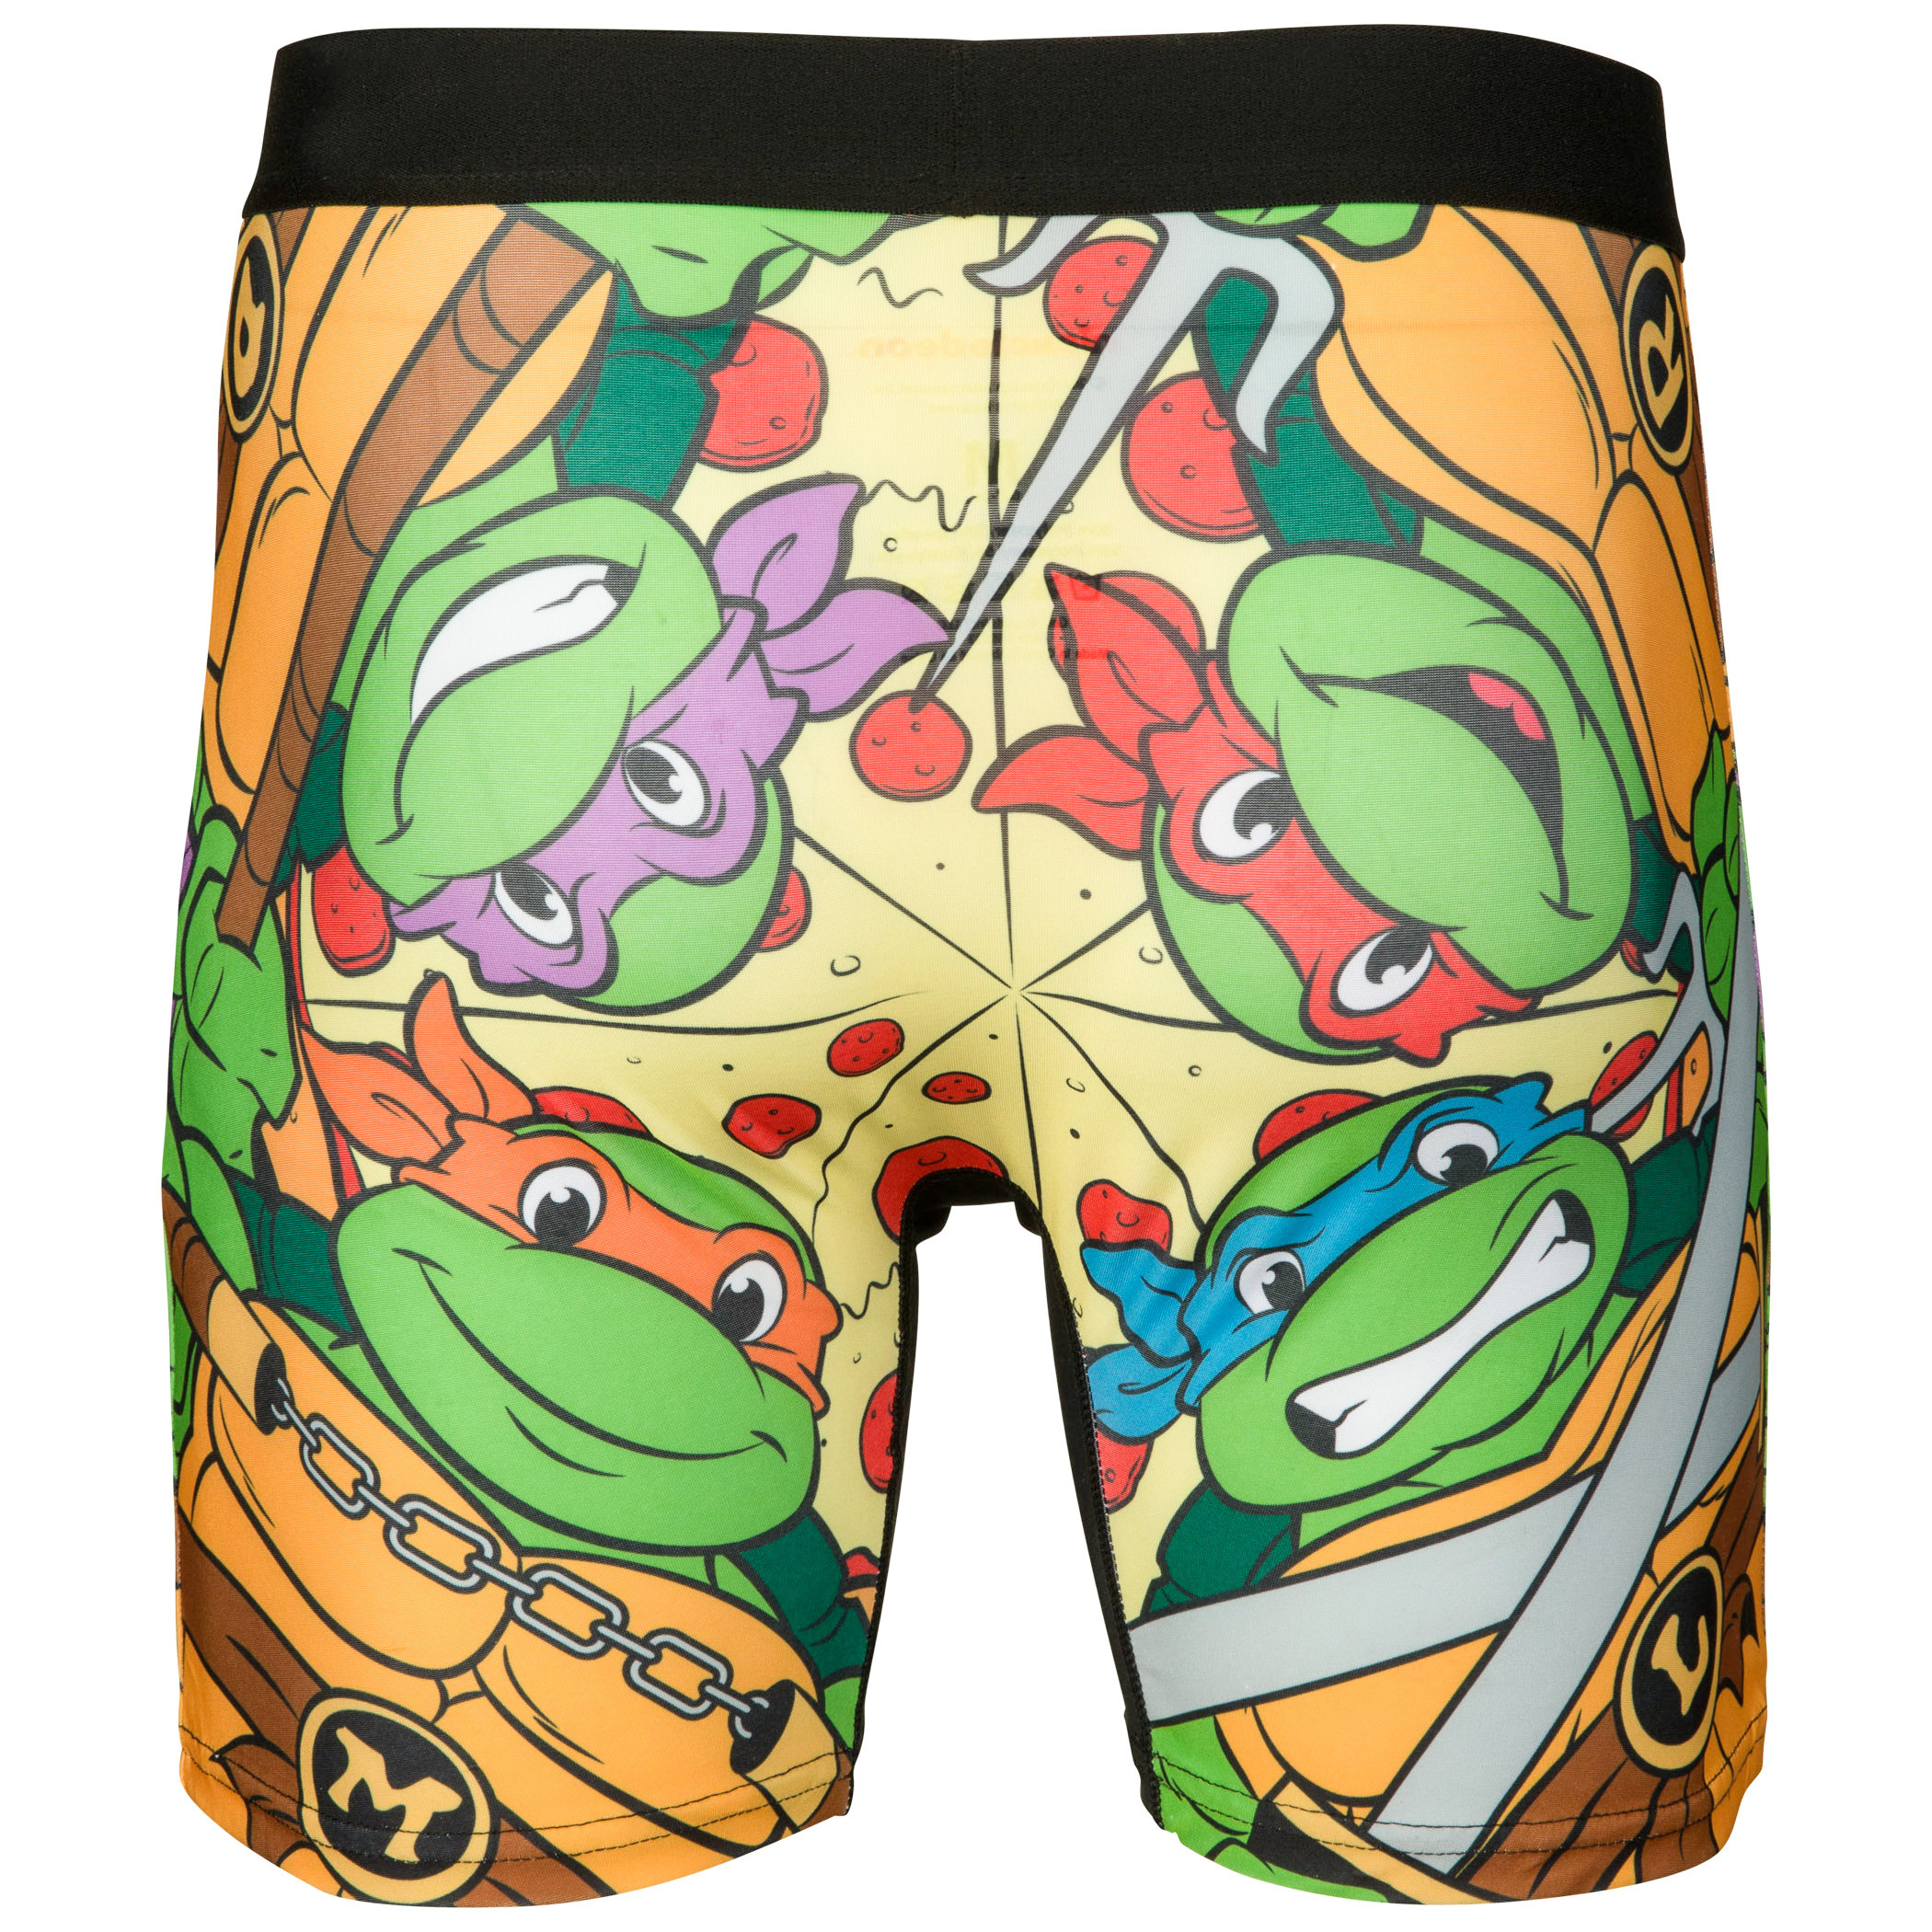 CRAZYBOXER Men's Underwear TMNT Pizza Box Non-slip waistband Soft Boxer  Brief Distortion-free (Creative Packaging) 